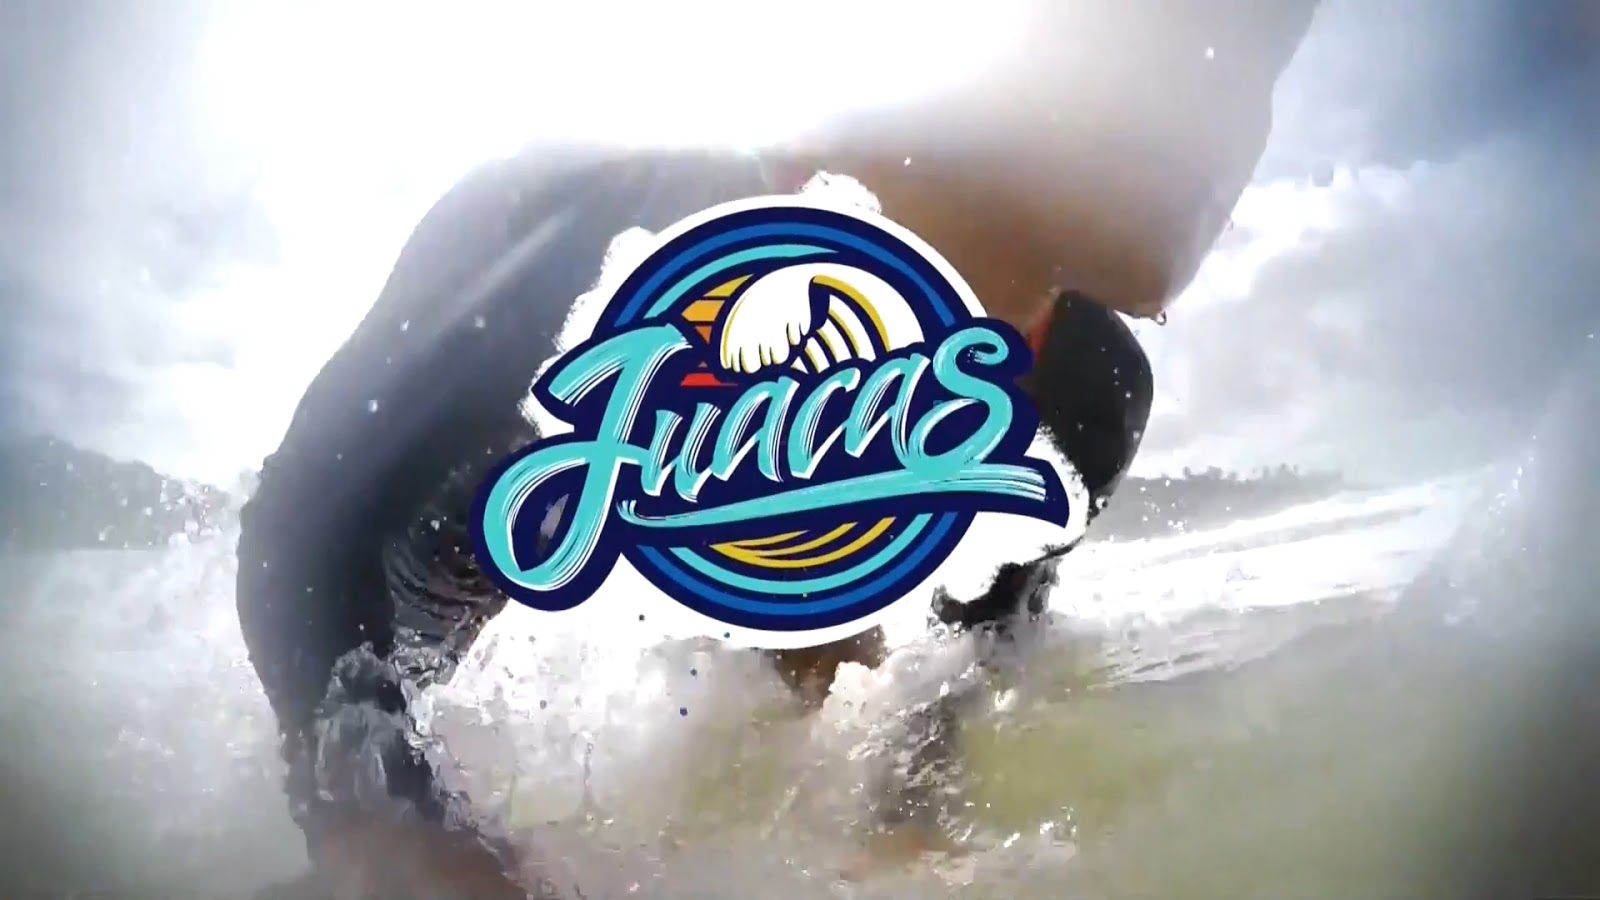 Juacas, una serie llena de aventuras de surf llega el 03 de julio